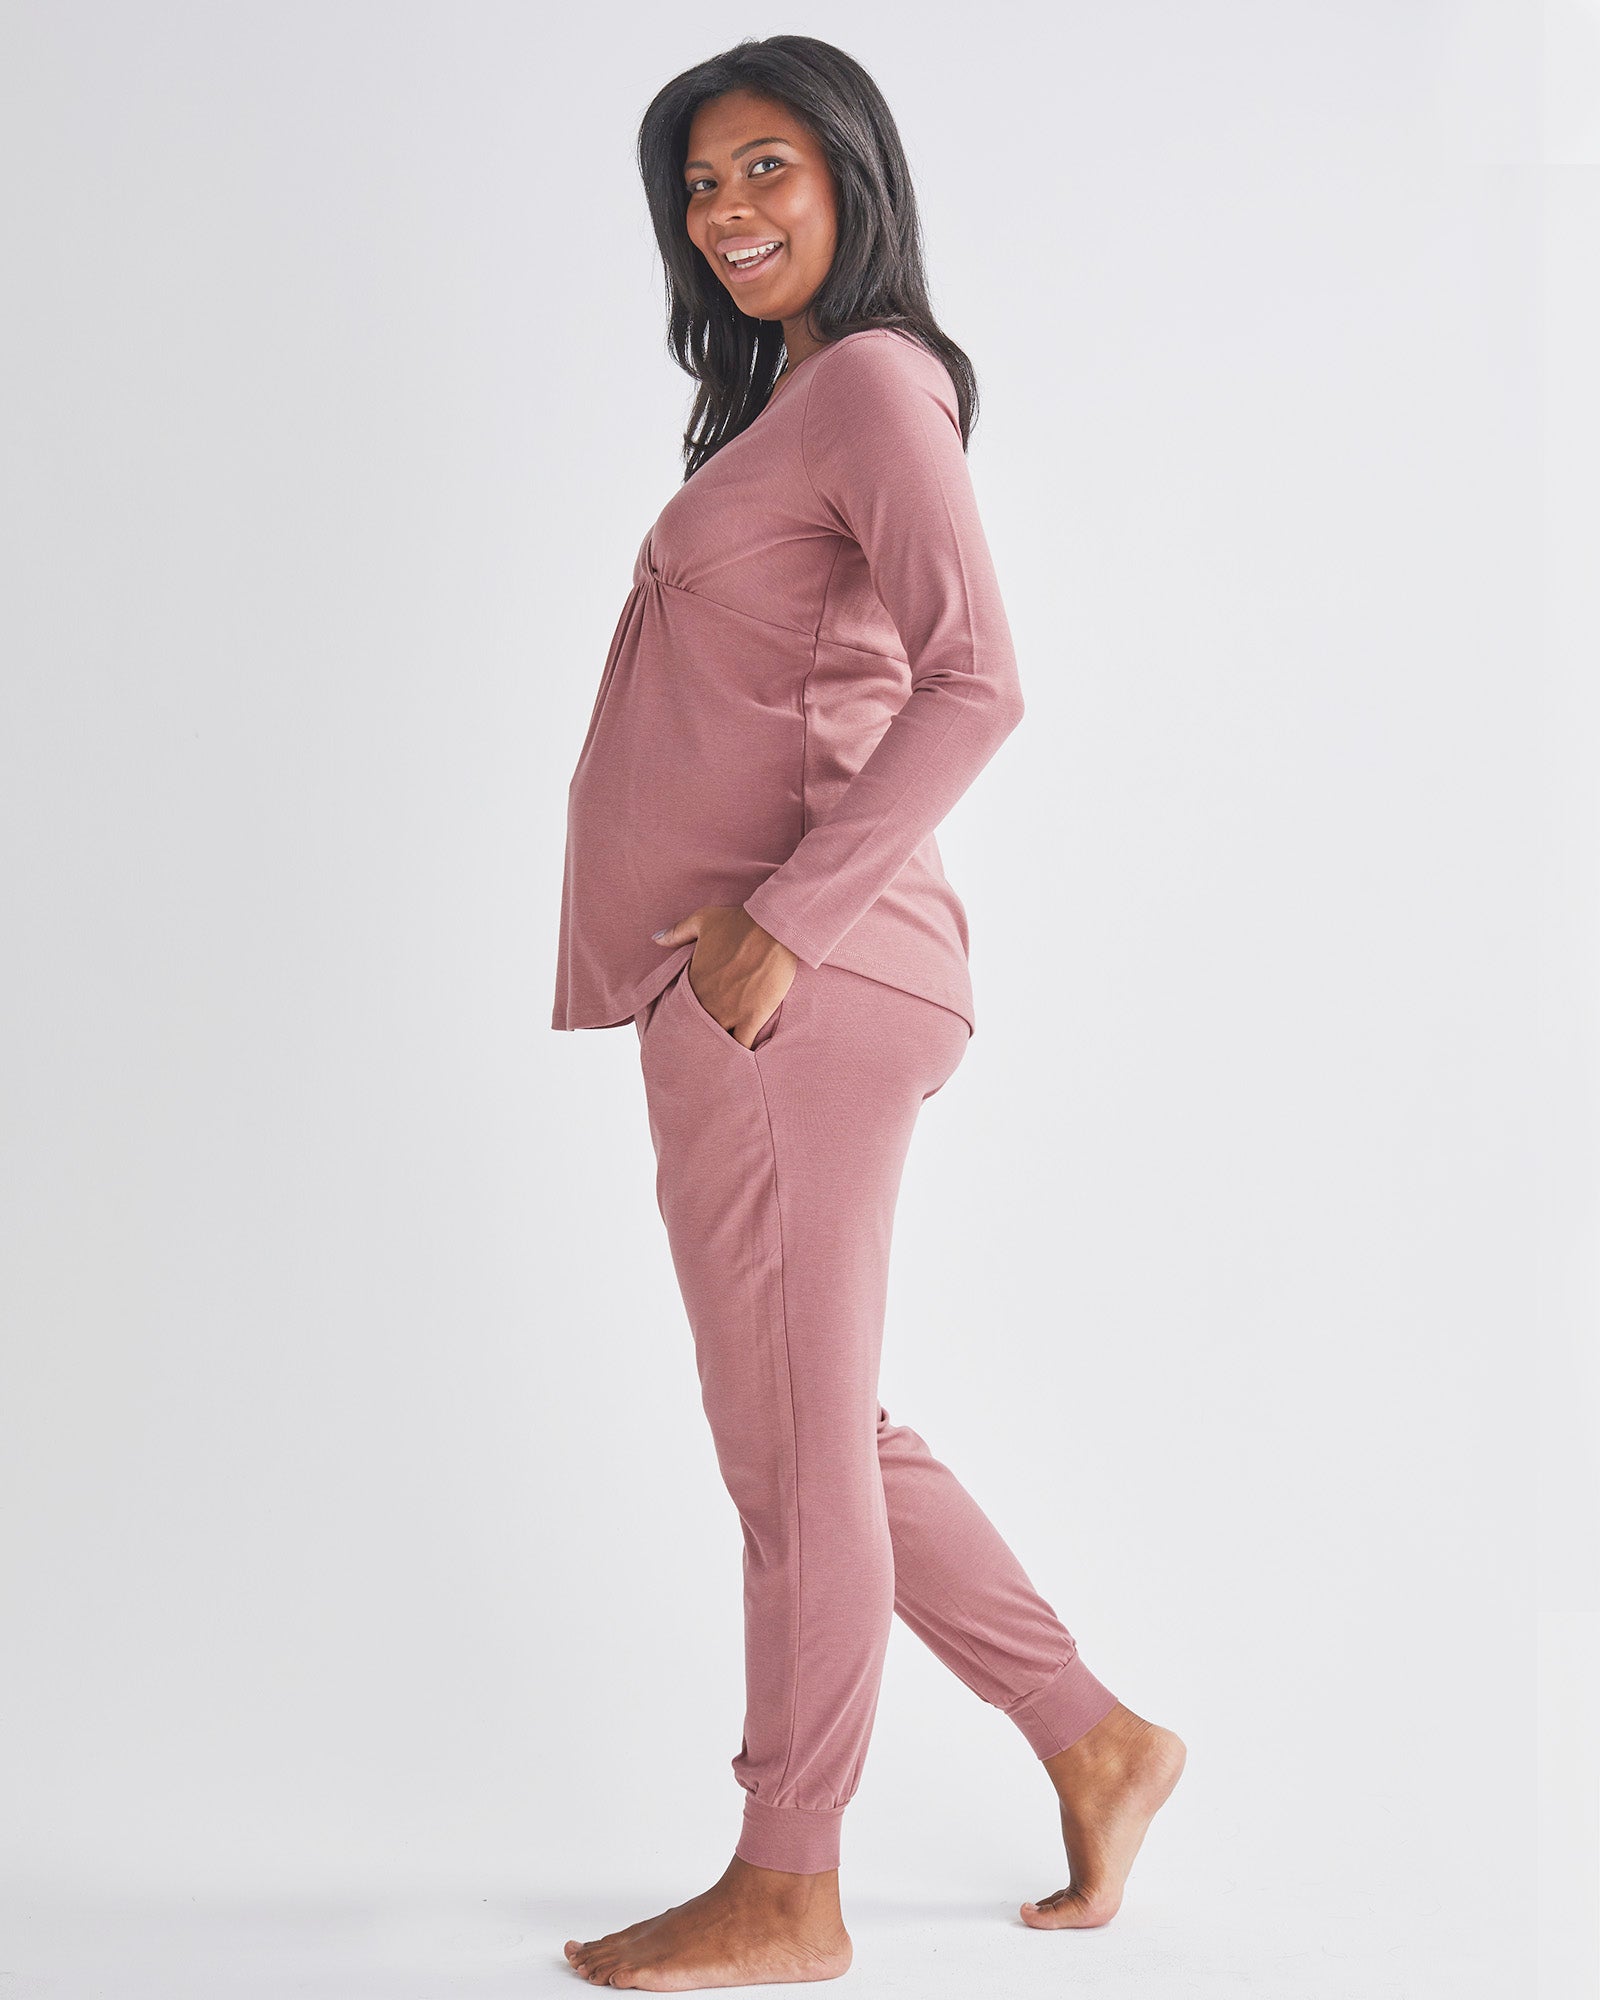 Side View - A Pregnant Woman Wearing 2-Piece Kyra Maternity Loungewear/Sleepwear PJ set in Pink from Angel maternity